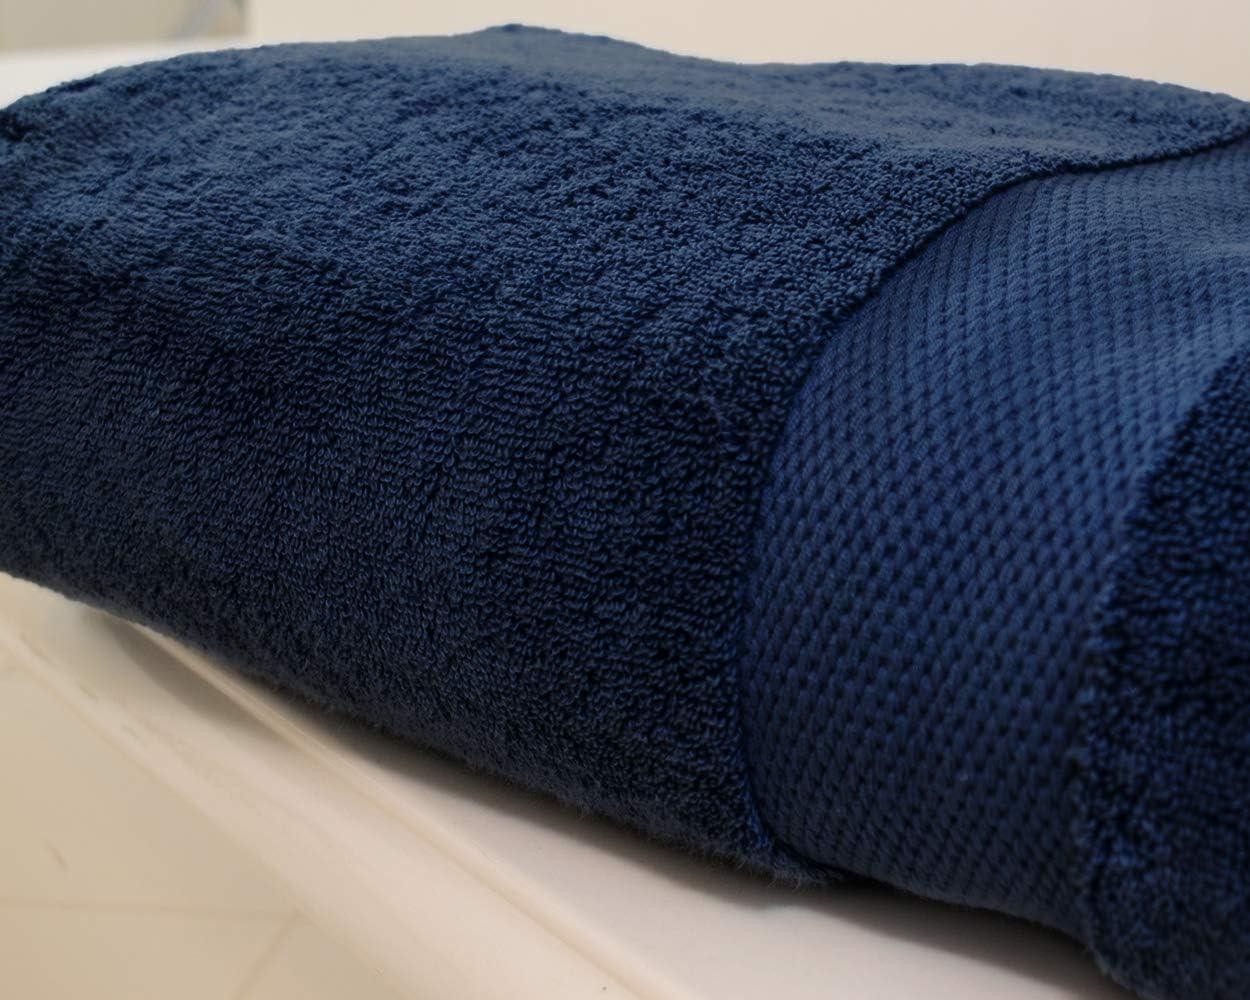 Oversized Bath Towels Luxury Sheet Extra Large Body Wrap 100 Cotton Blue Set  2